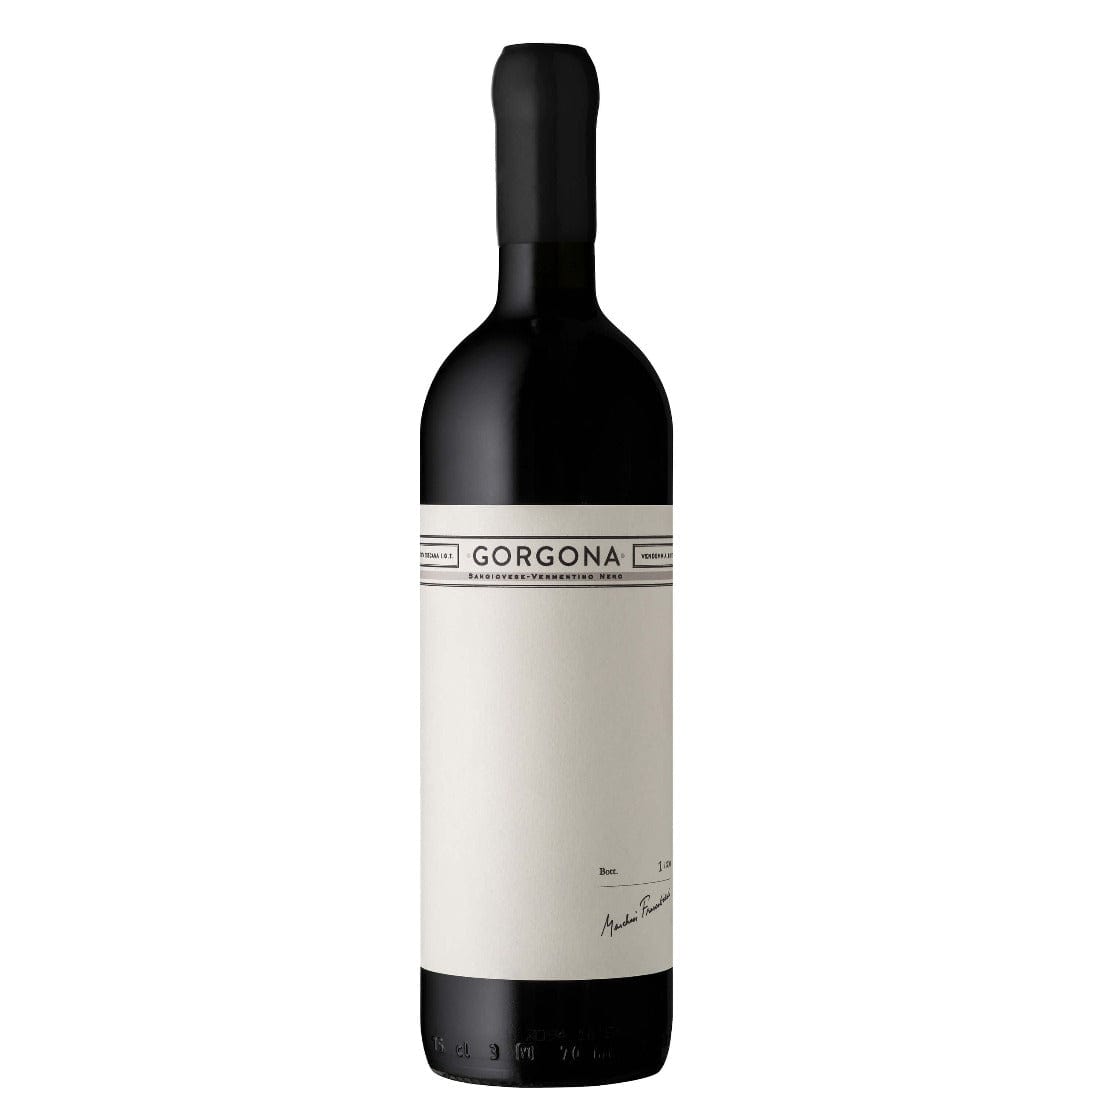 Costa Toscana Gorgona 2020 Igt Rosso - Frescobaldi-Vinolog24.com